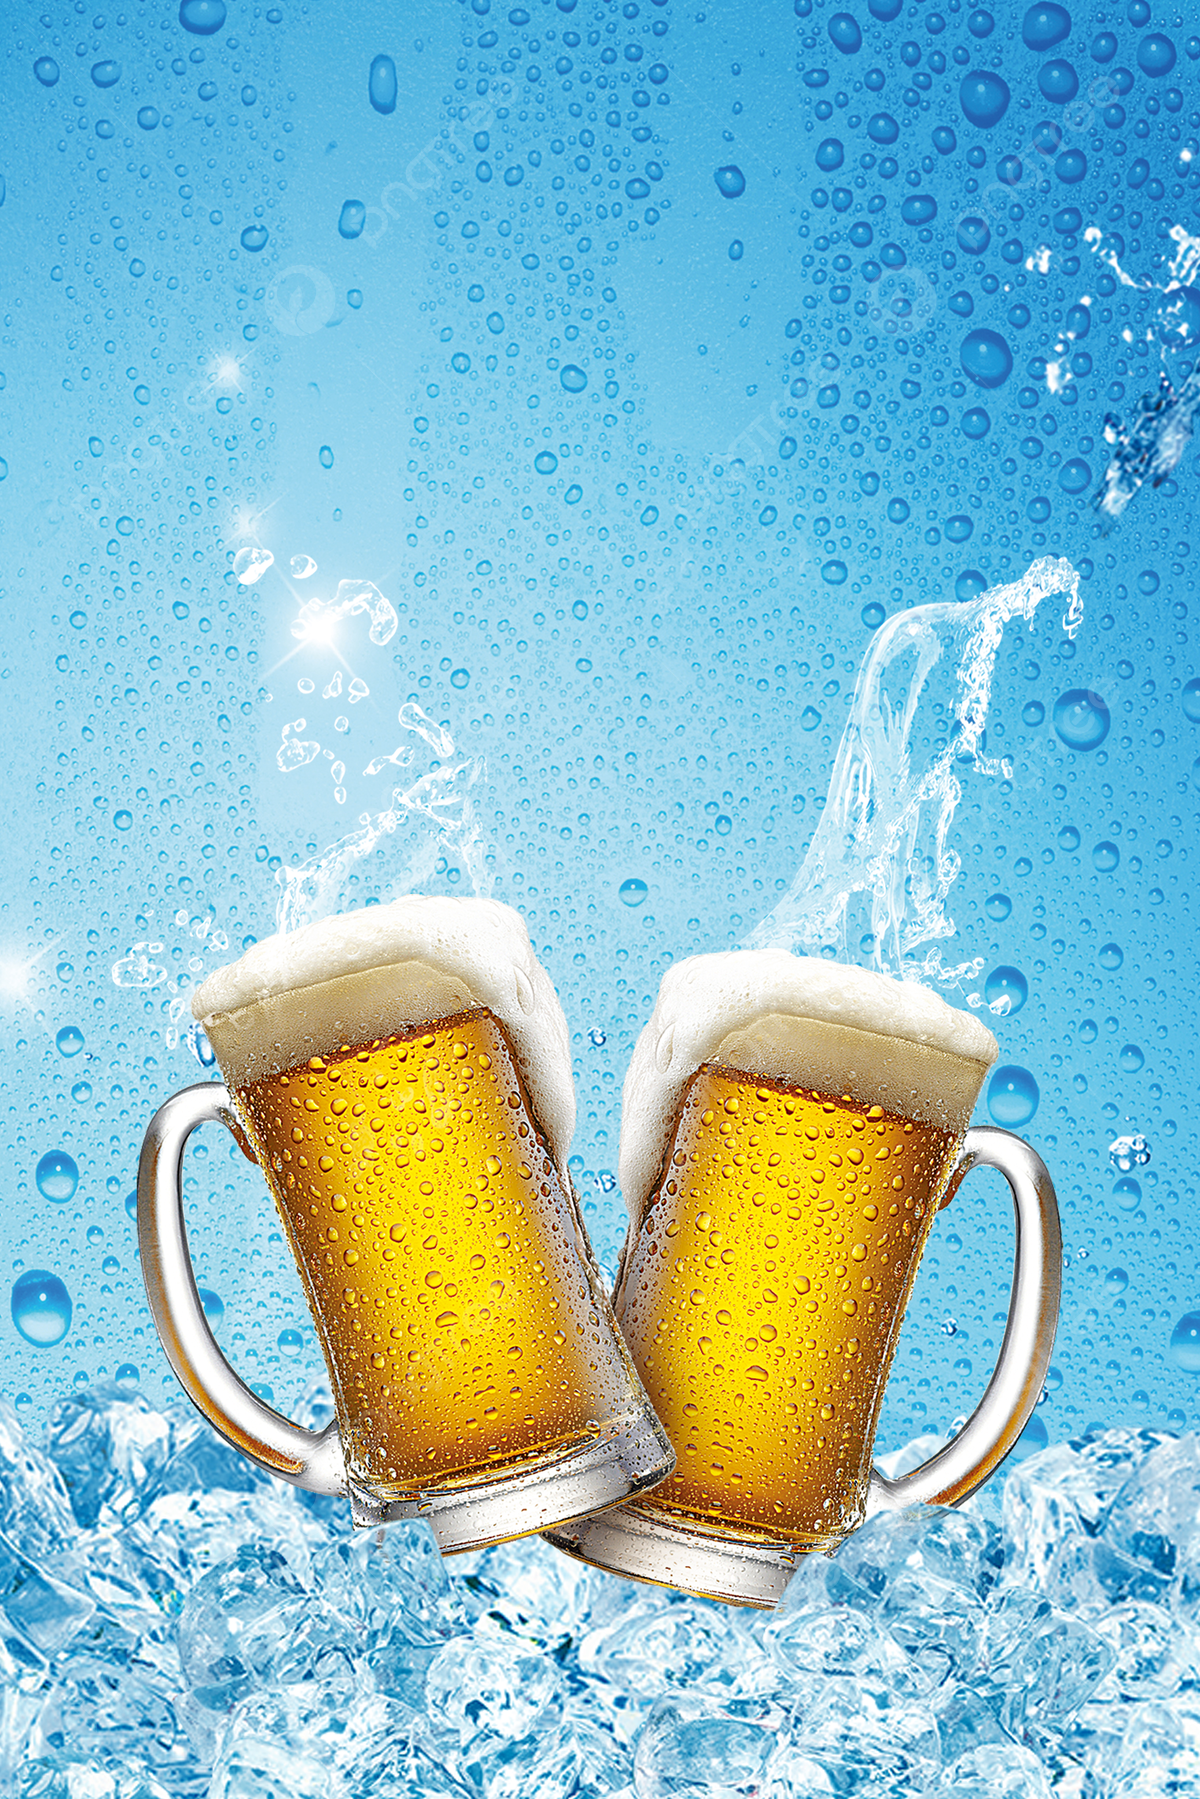  Bier Hintergrundbild 1200x1799. Cool Cool Summer Heat Beer Hintergrundbild zum kostenlosen Download